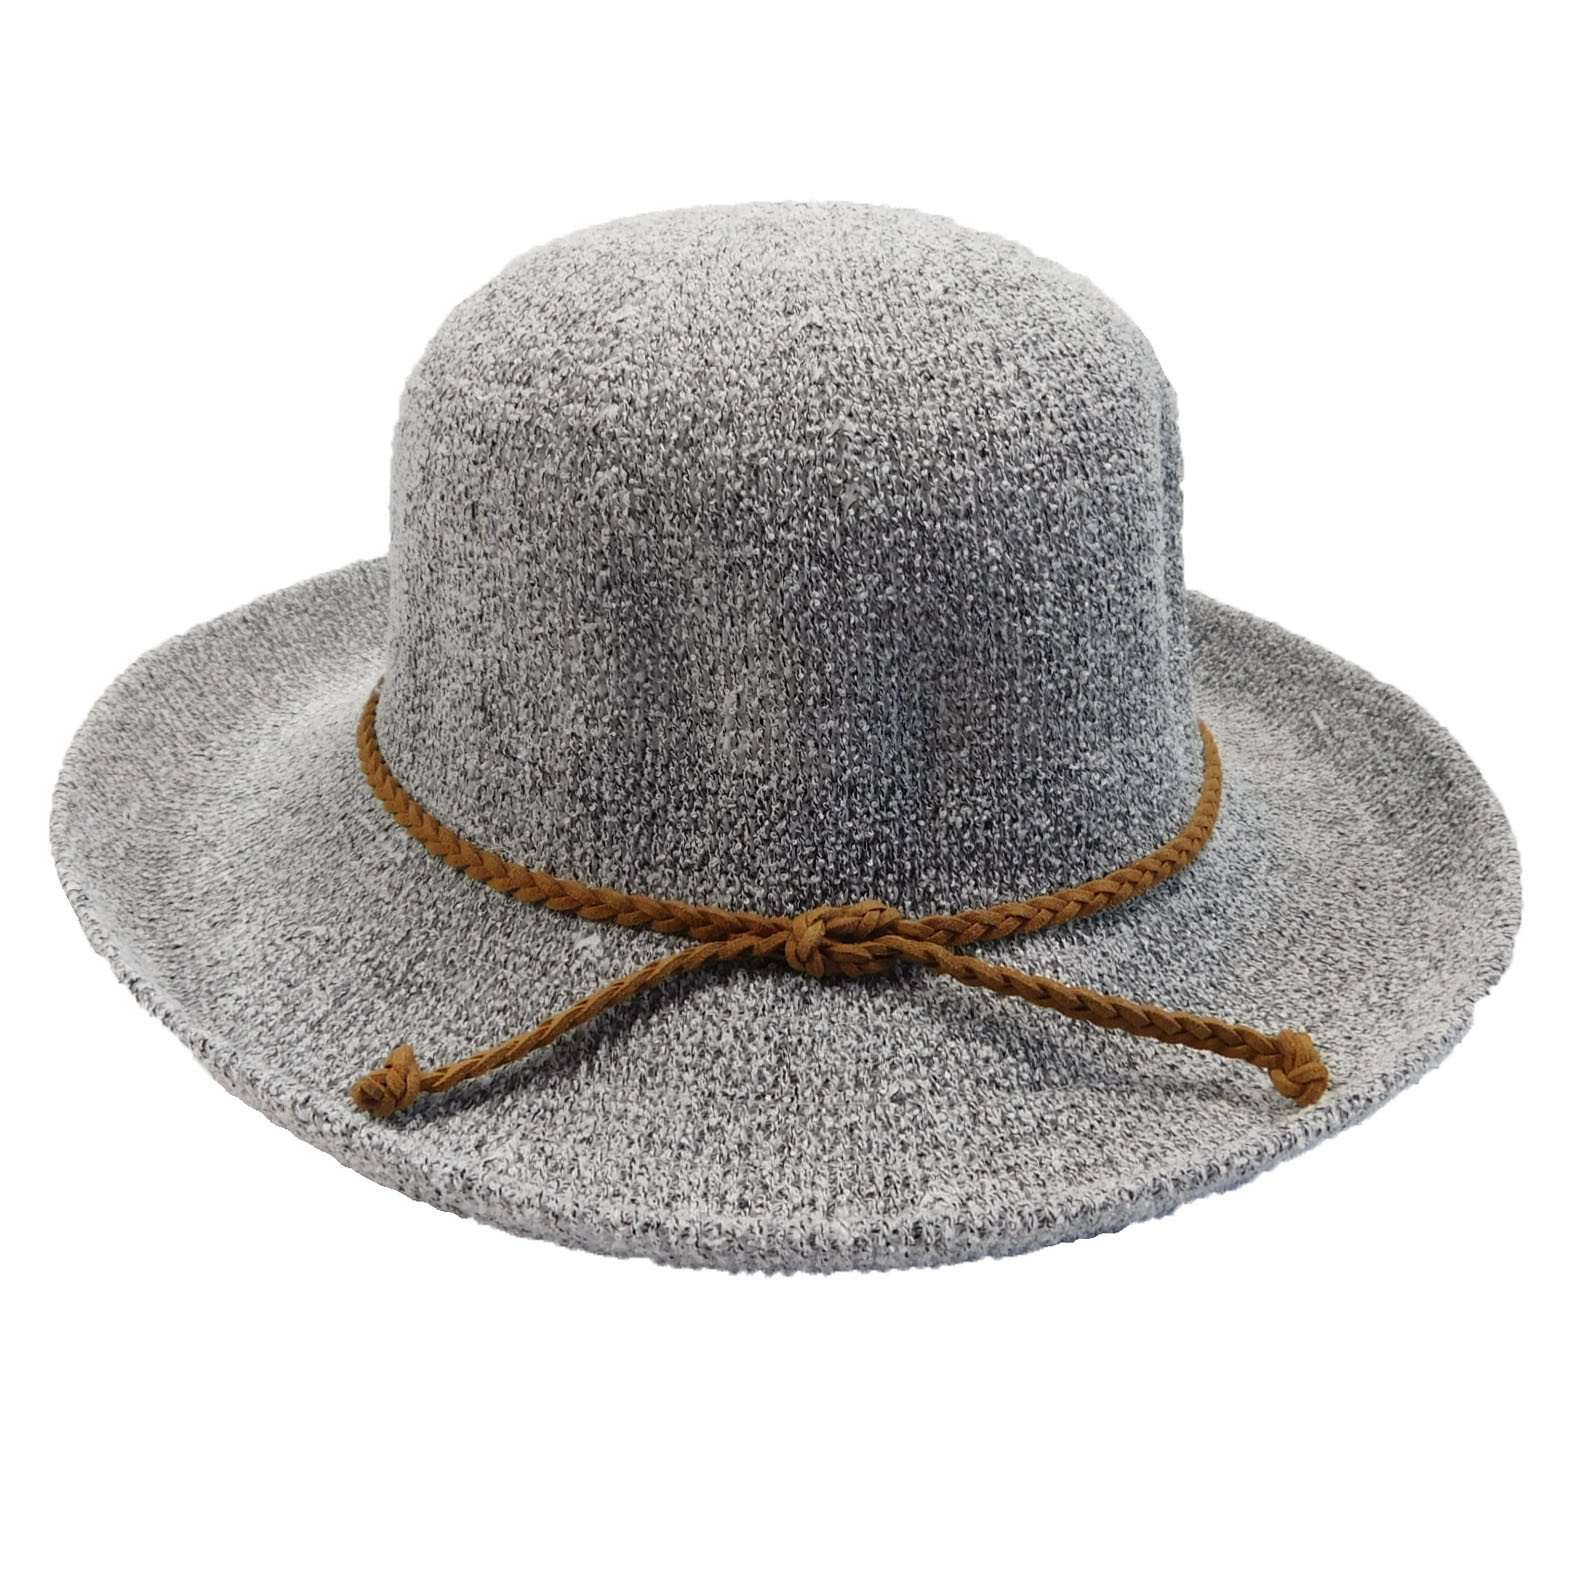 Knit Breton-Up Turned Brim Hat - Grey Kettle Brim Hat Boardwalk Style Hats da3113GY Grey Medium (57 cm) 